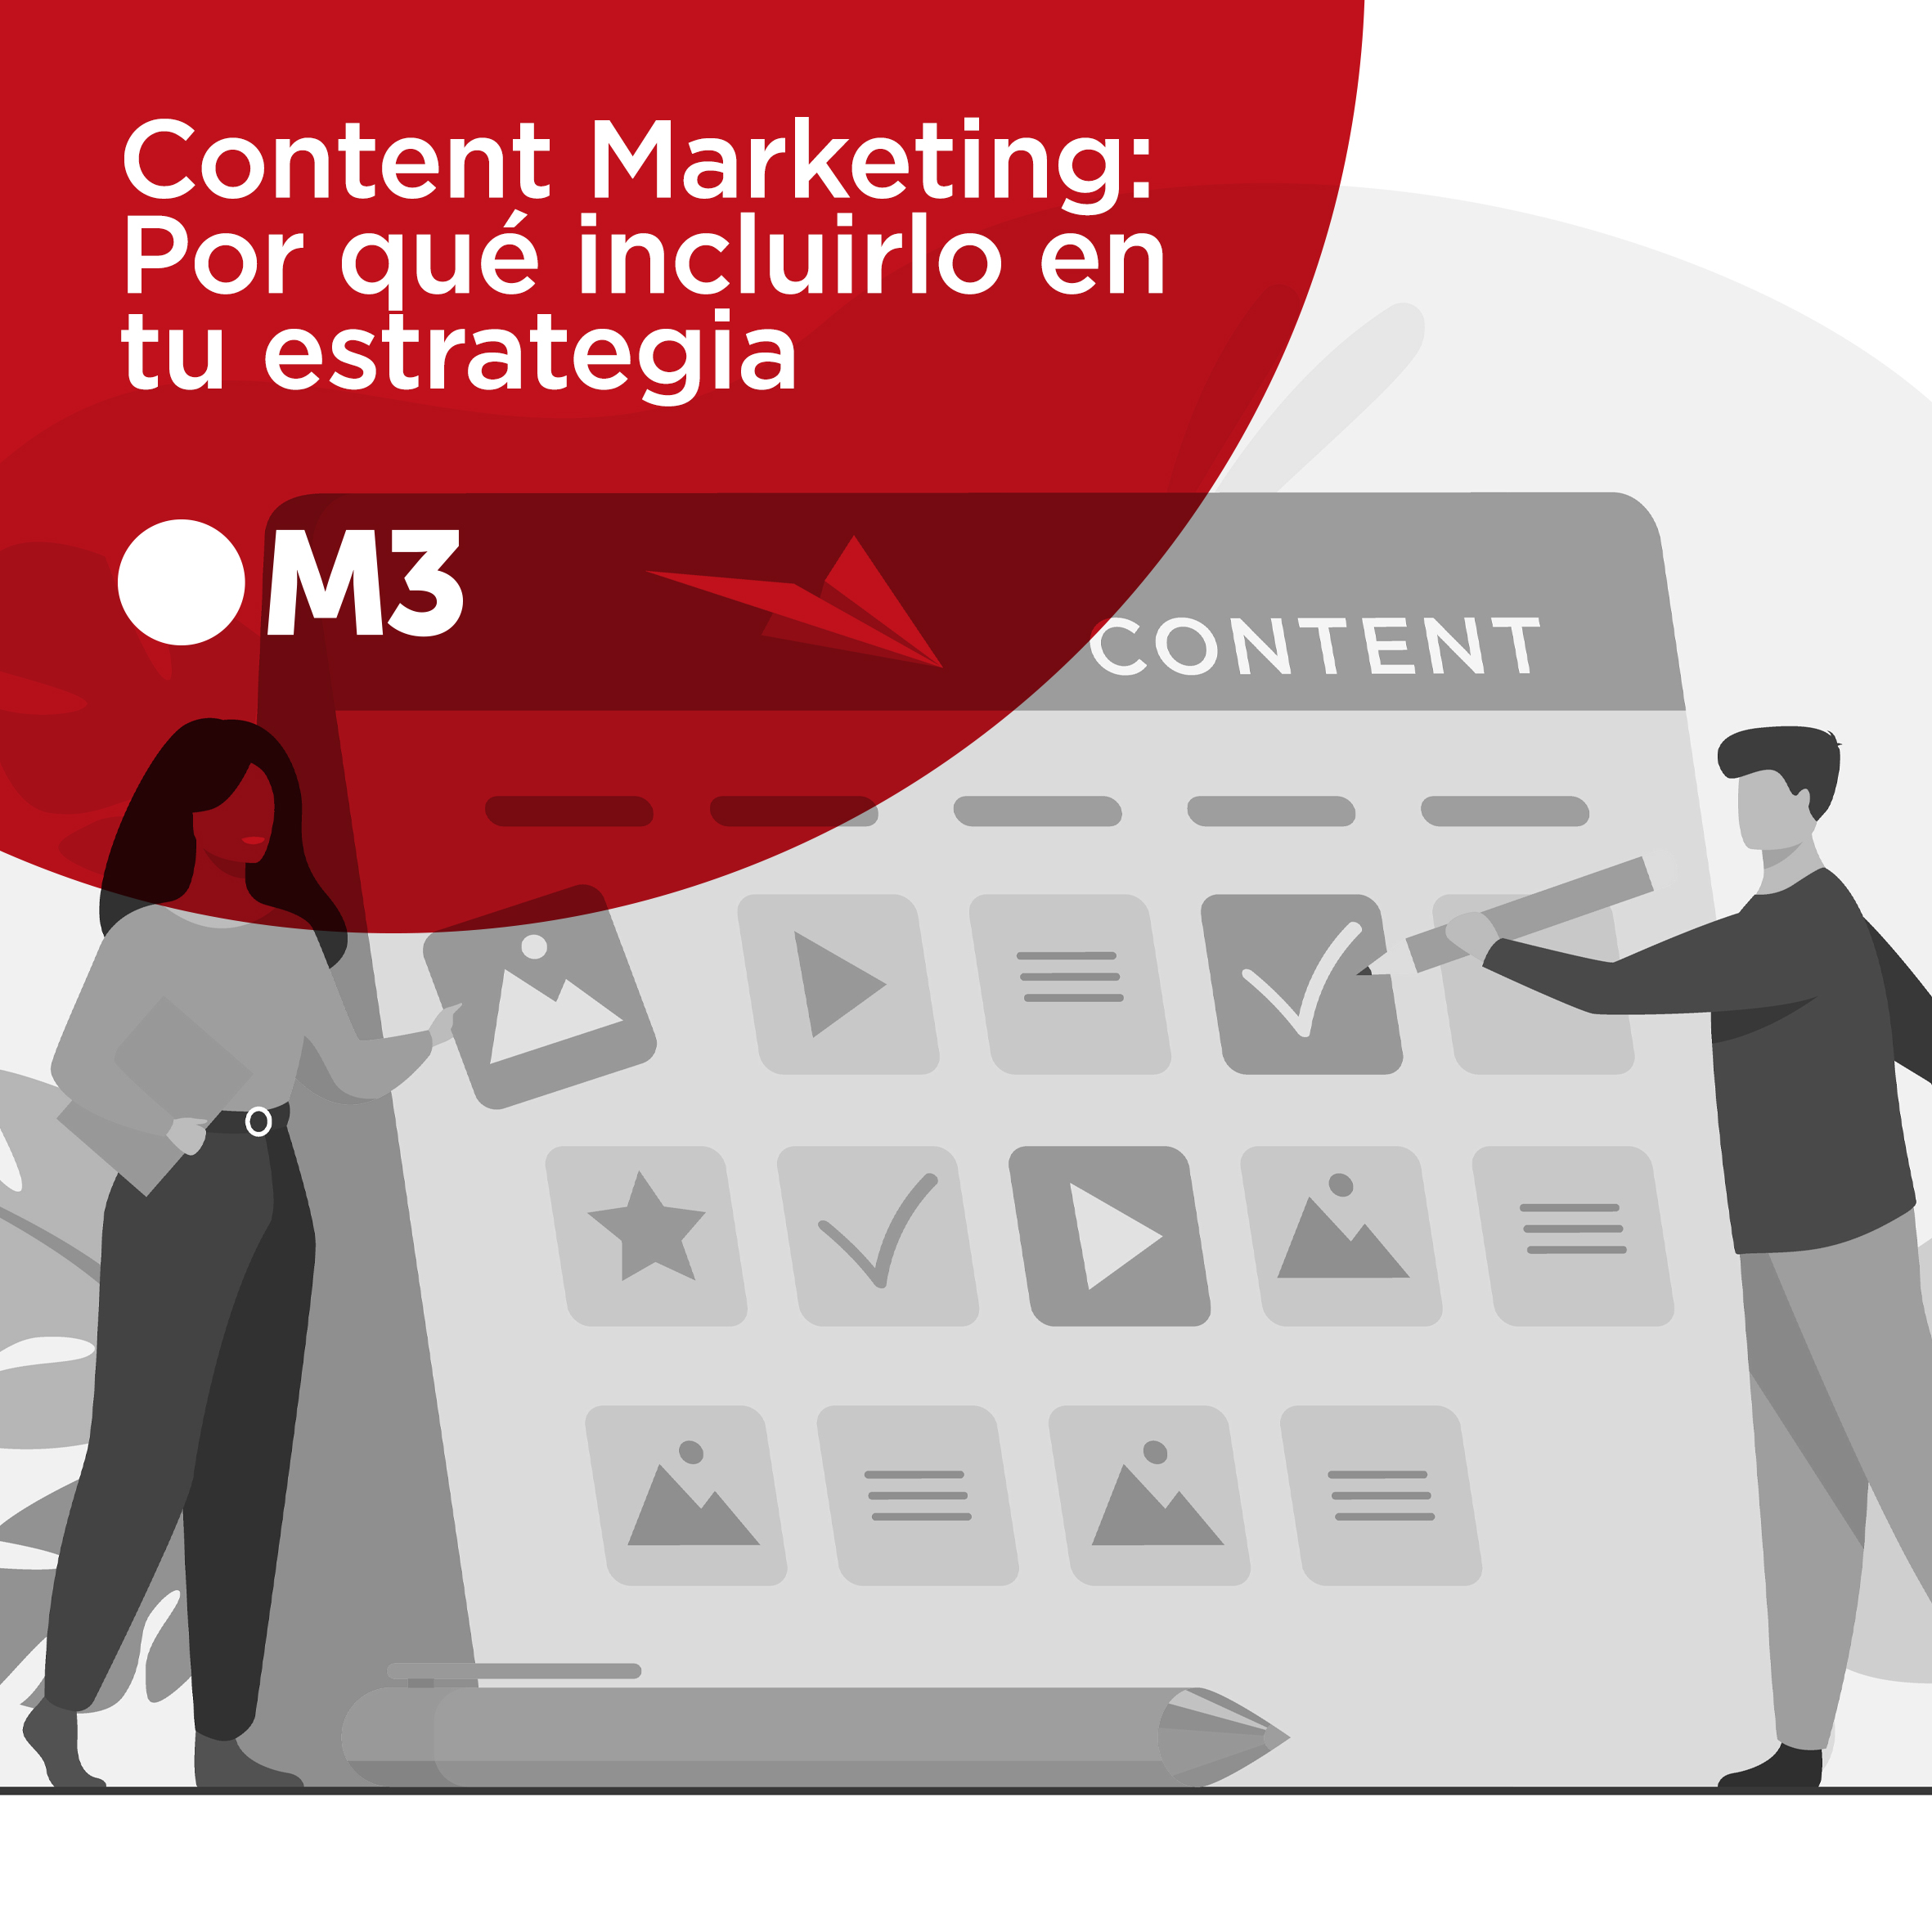 Content Marketing: Por qué incluirlo en tu estrategia